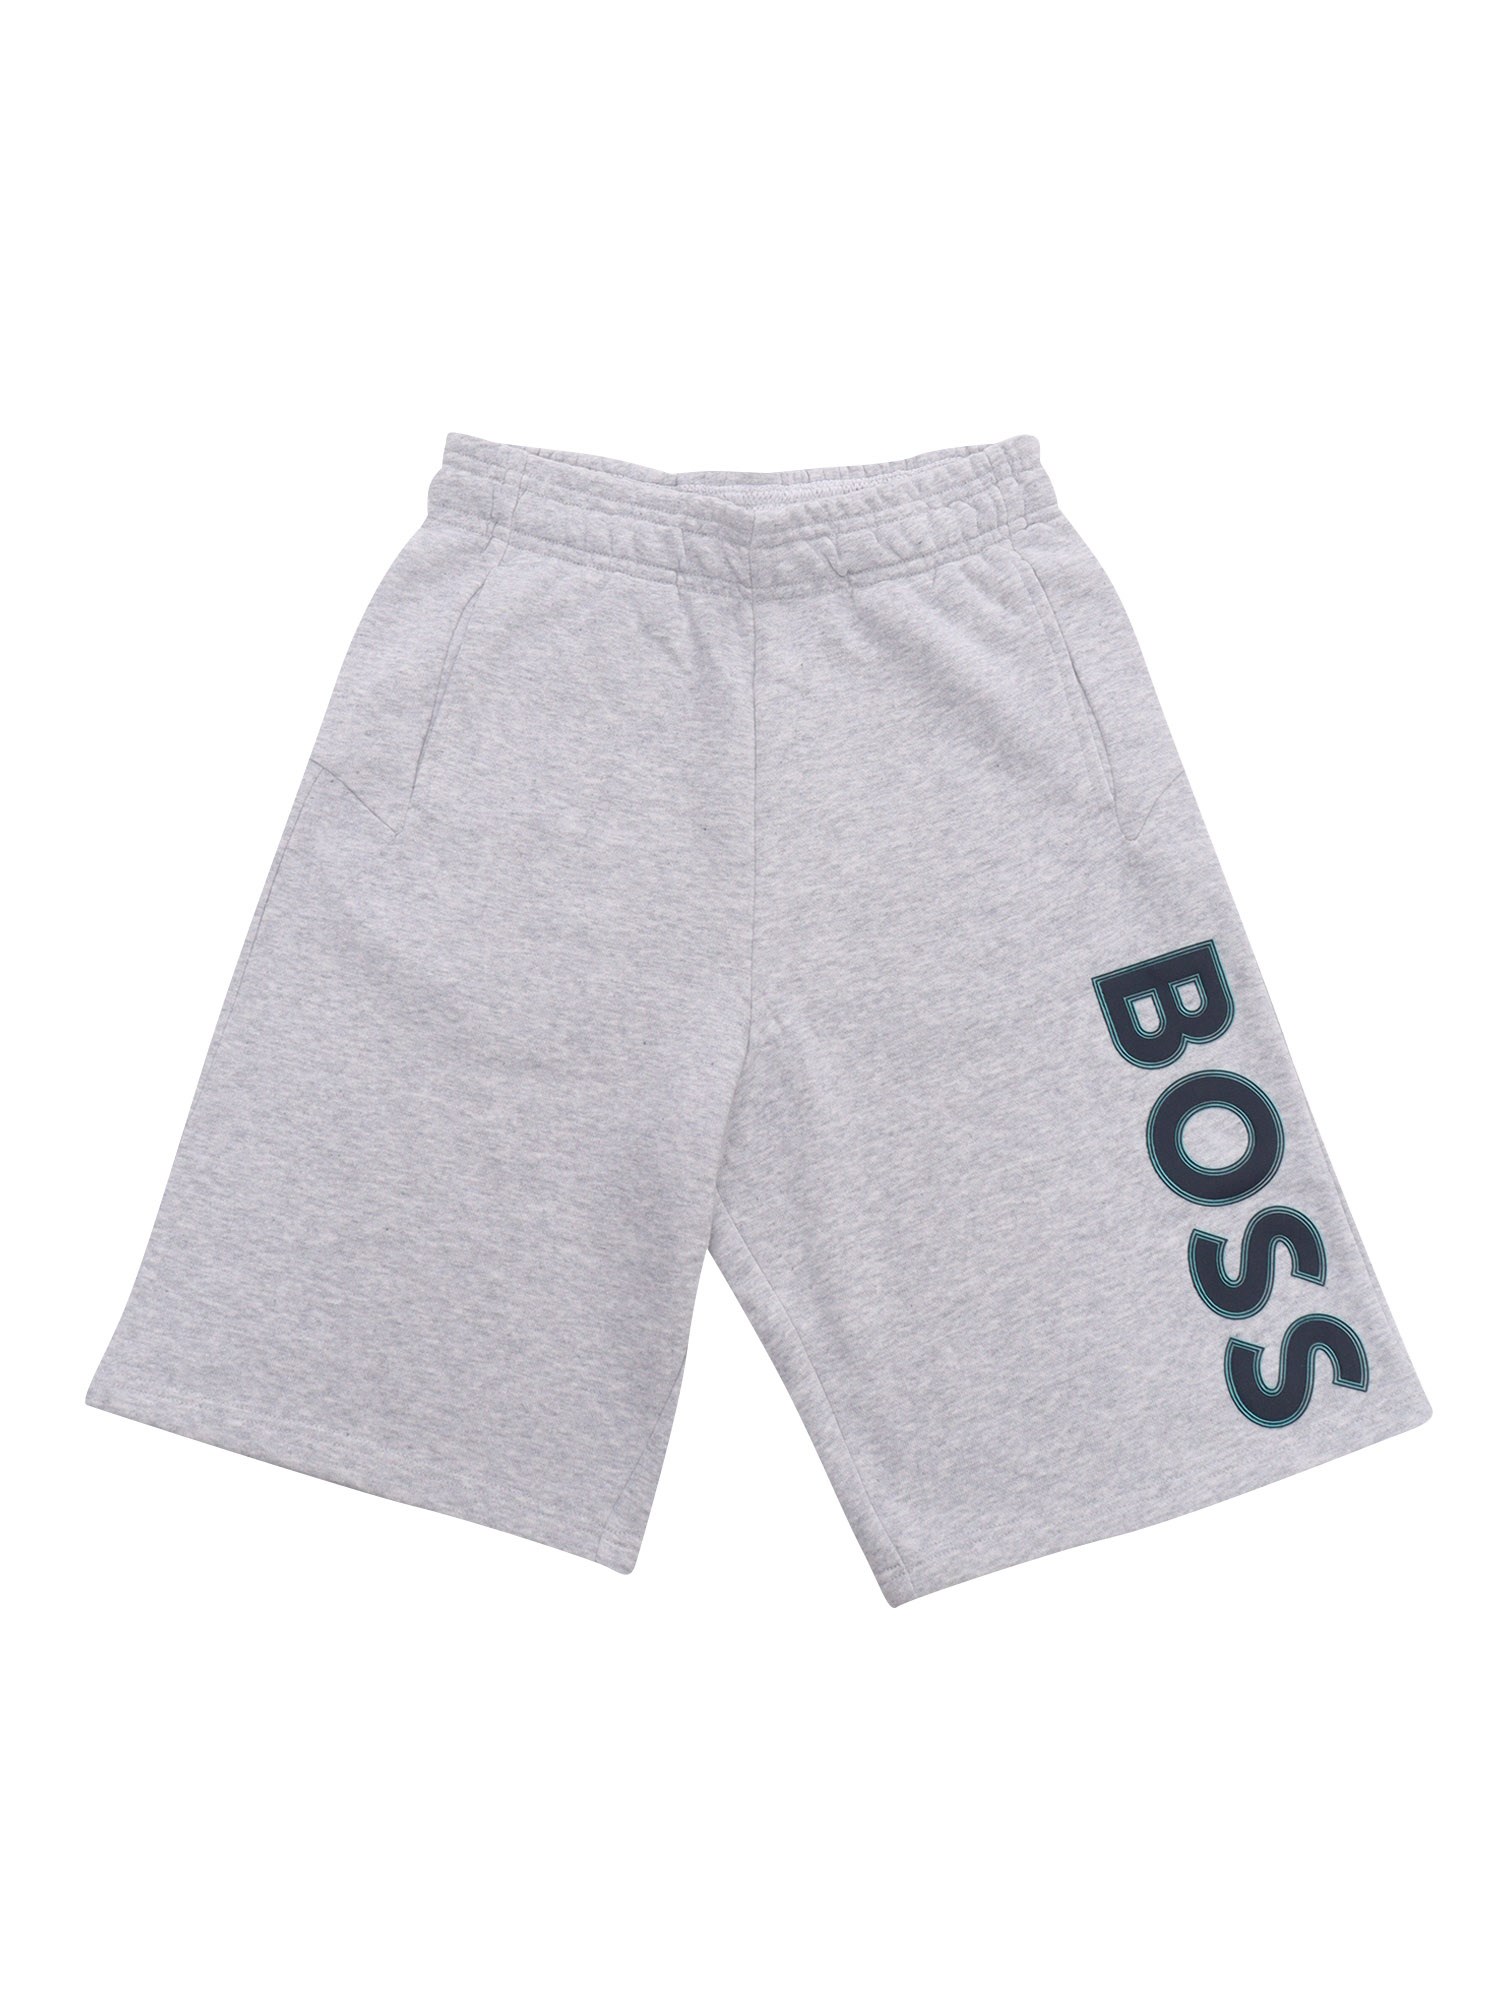 Hugo Boss Gray Shorts With Logo